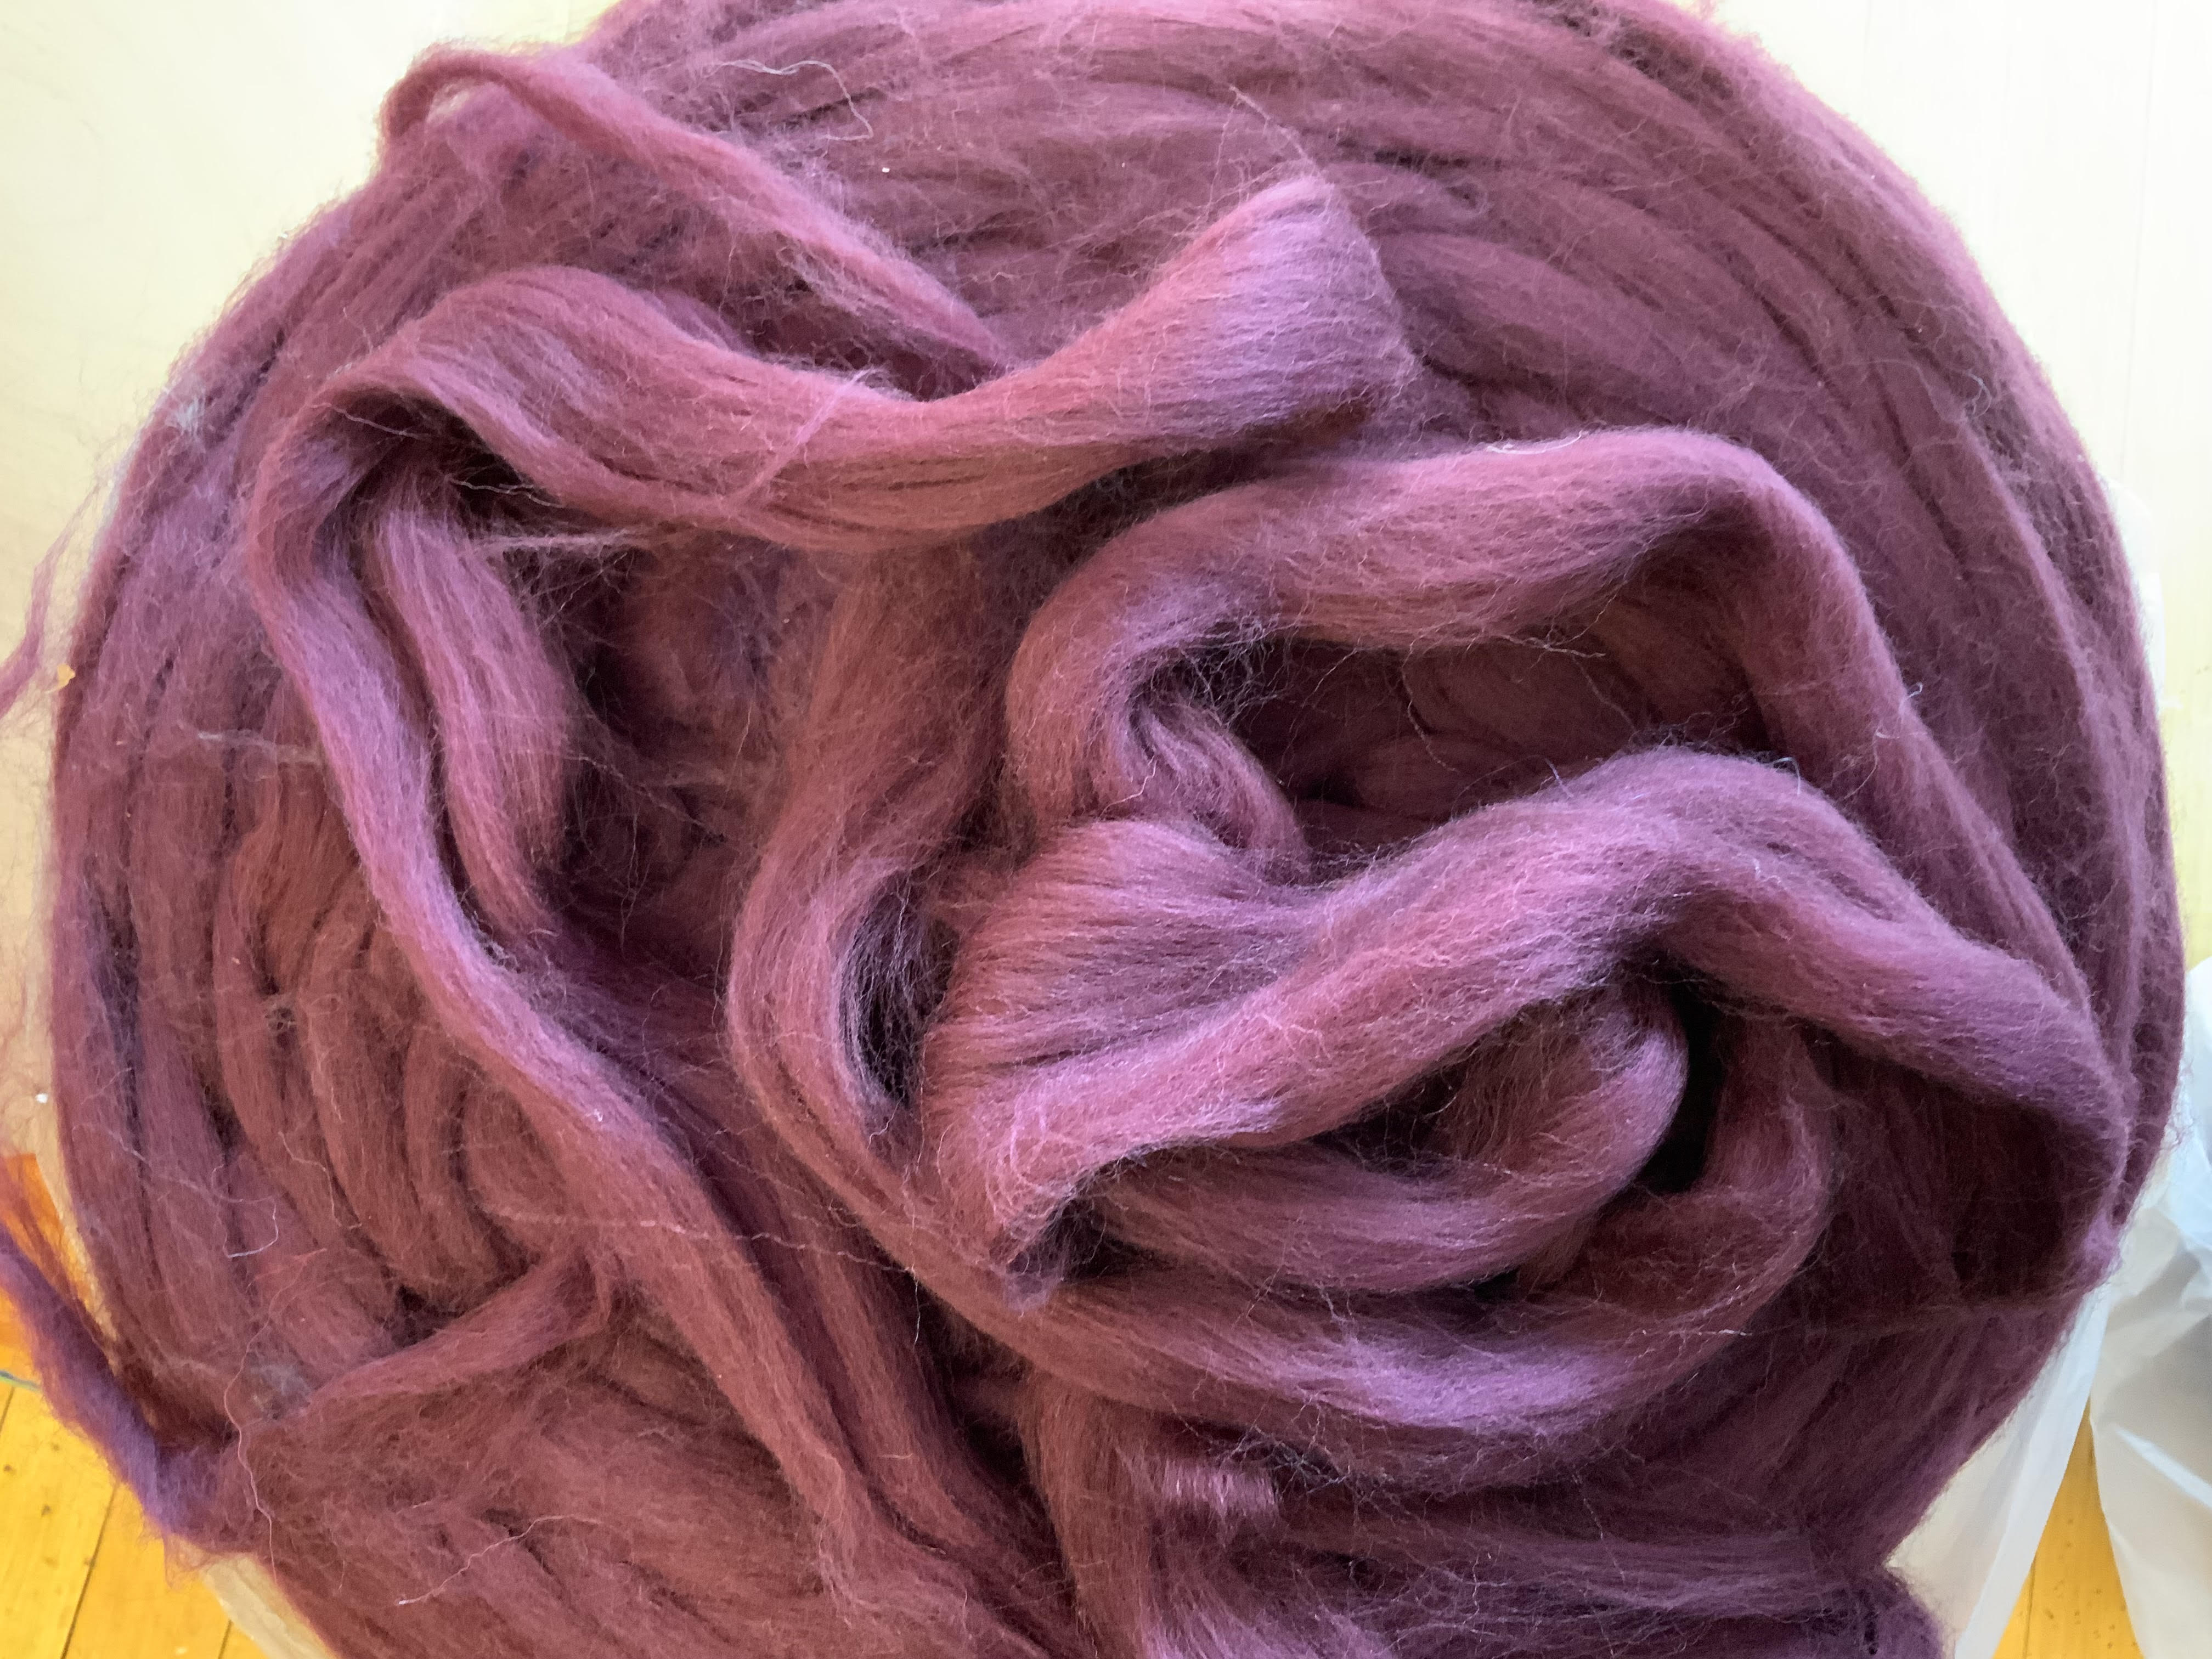 100% Corriedale Wool Dyed Top - 4 oz (115 g) - Burgundy